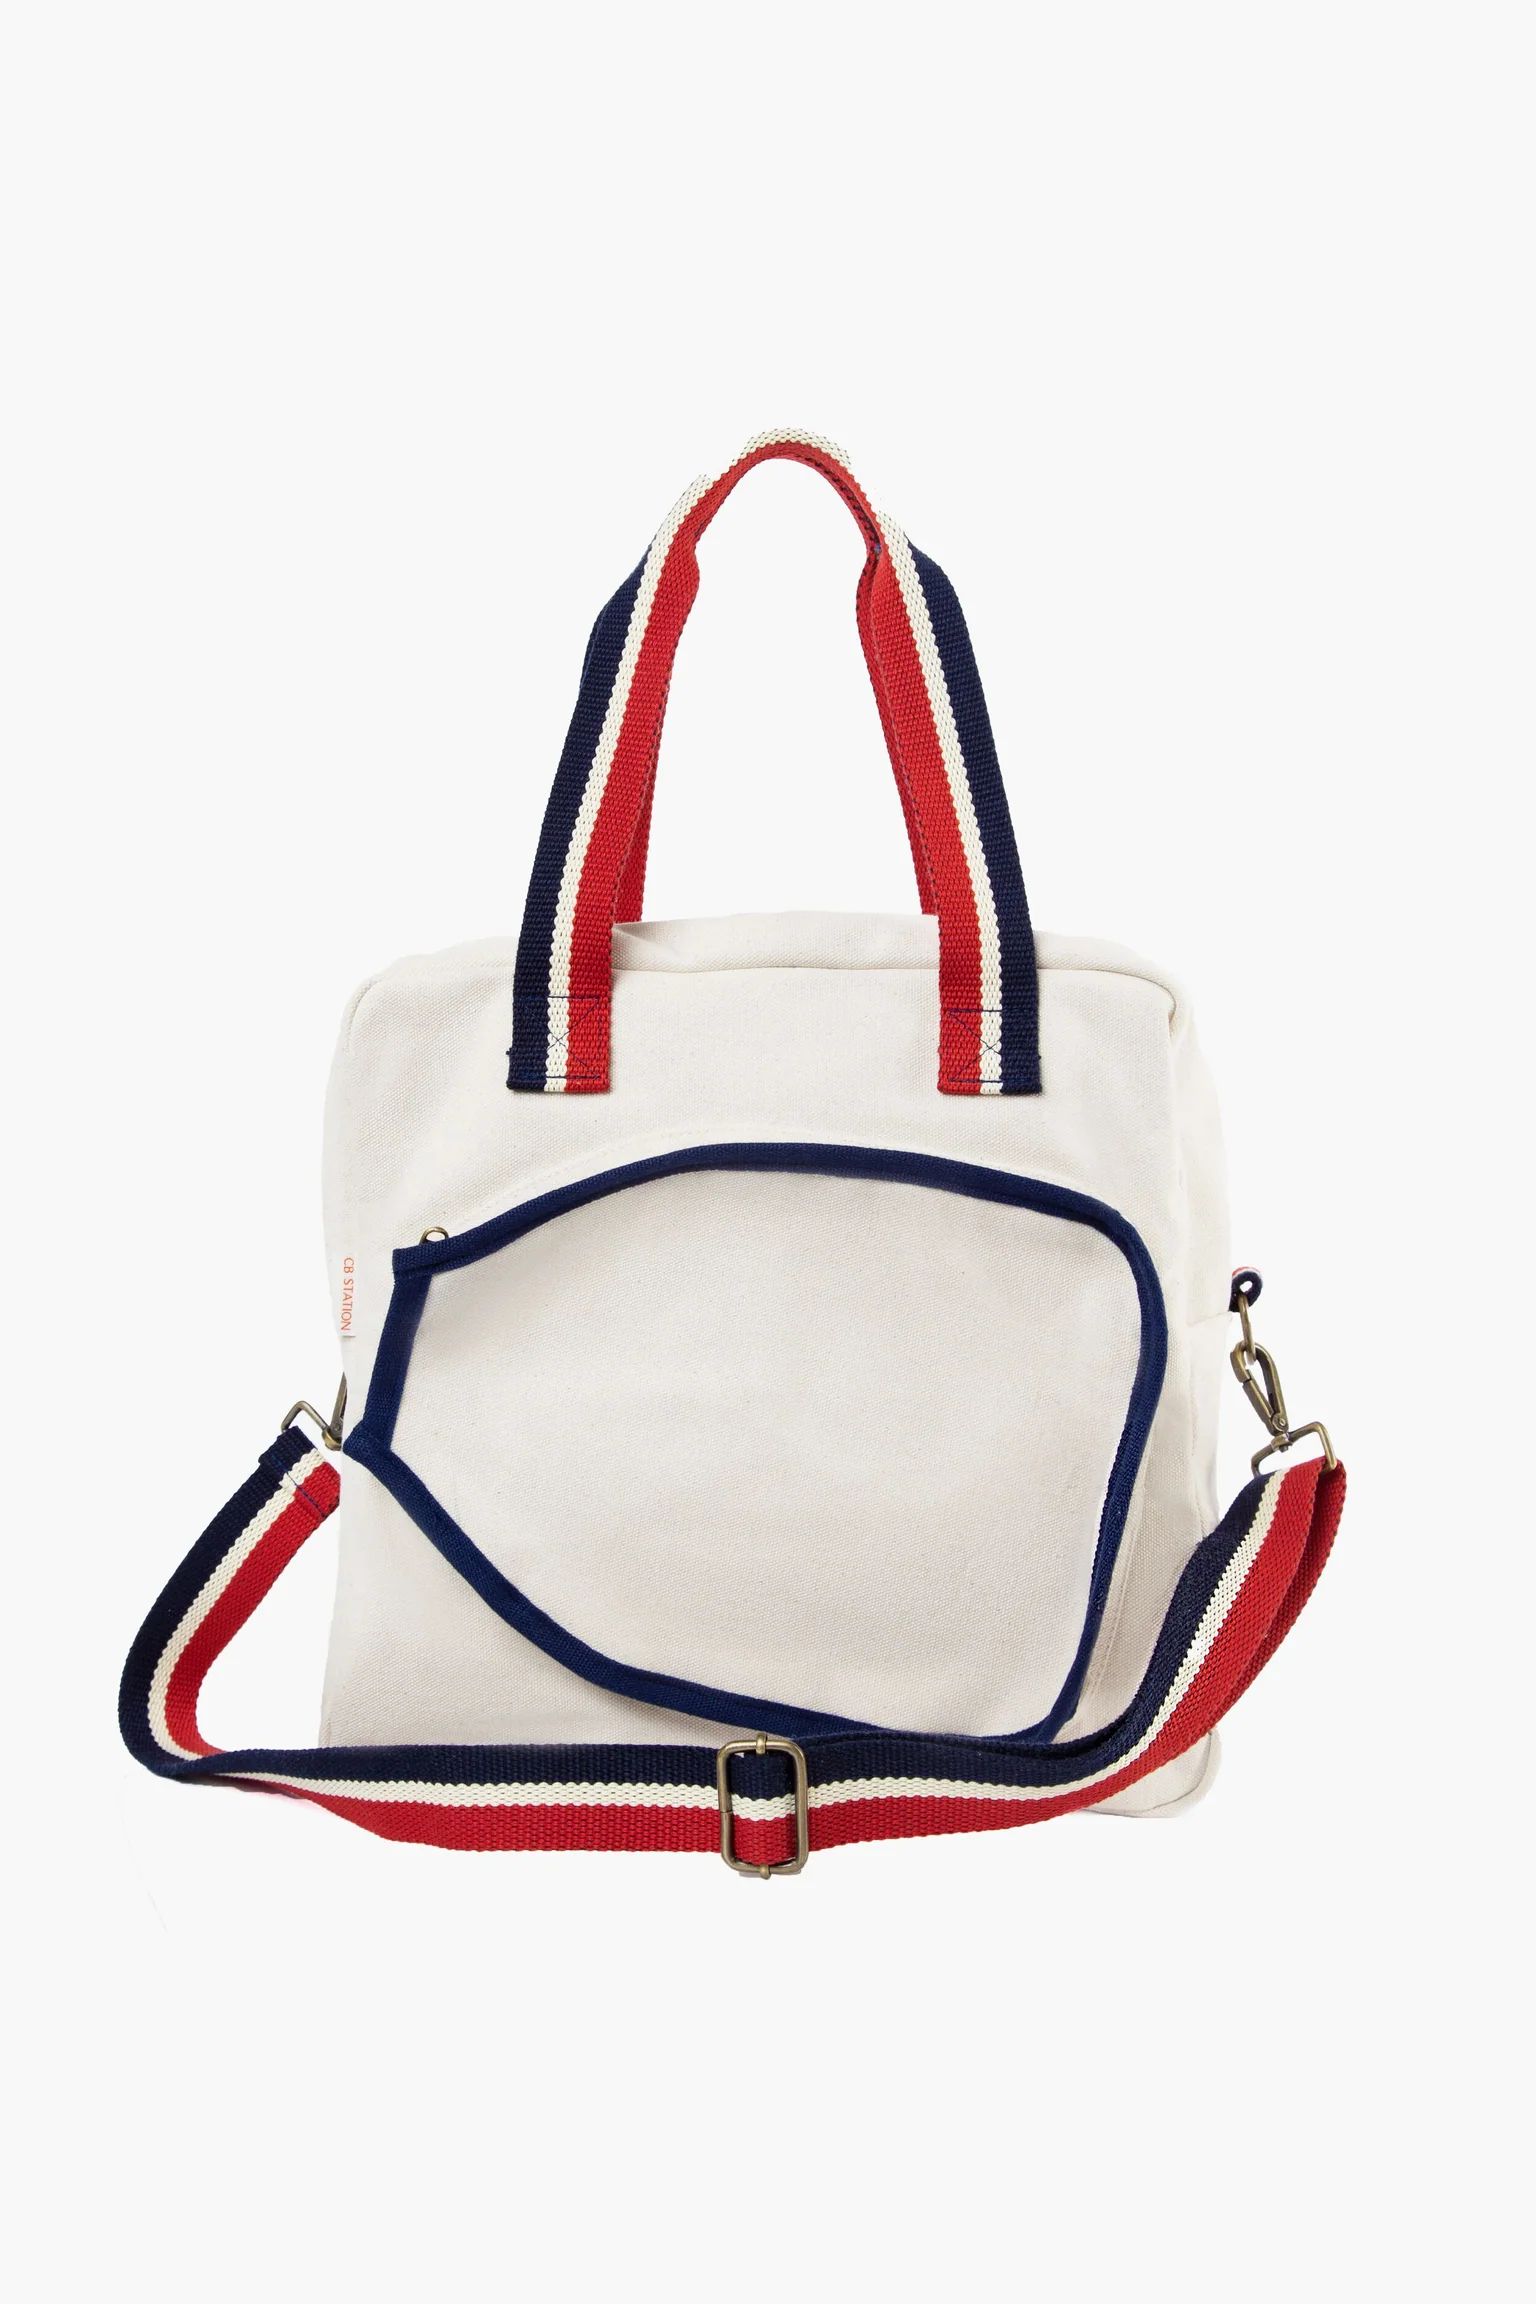 Red, White, and Blue Pickleball Bag | Tuckernuck (US)